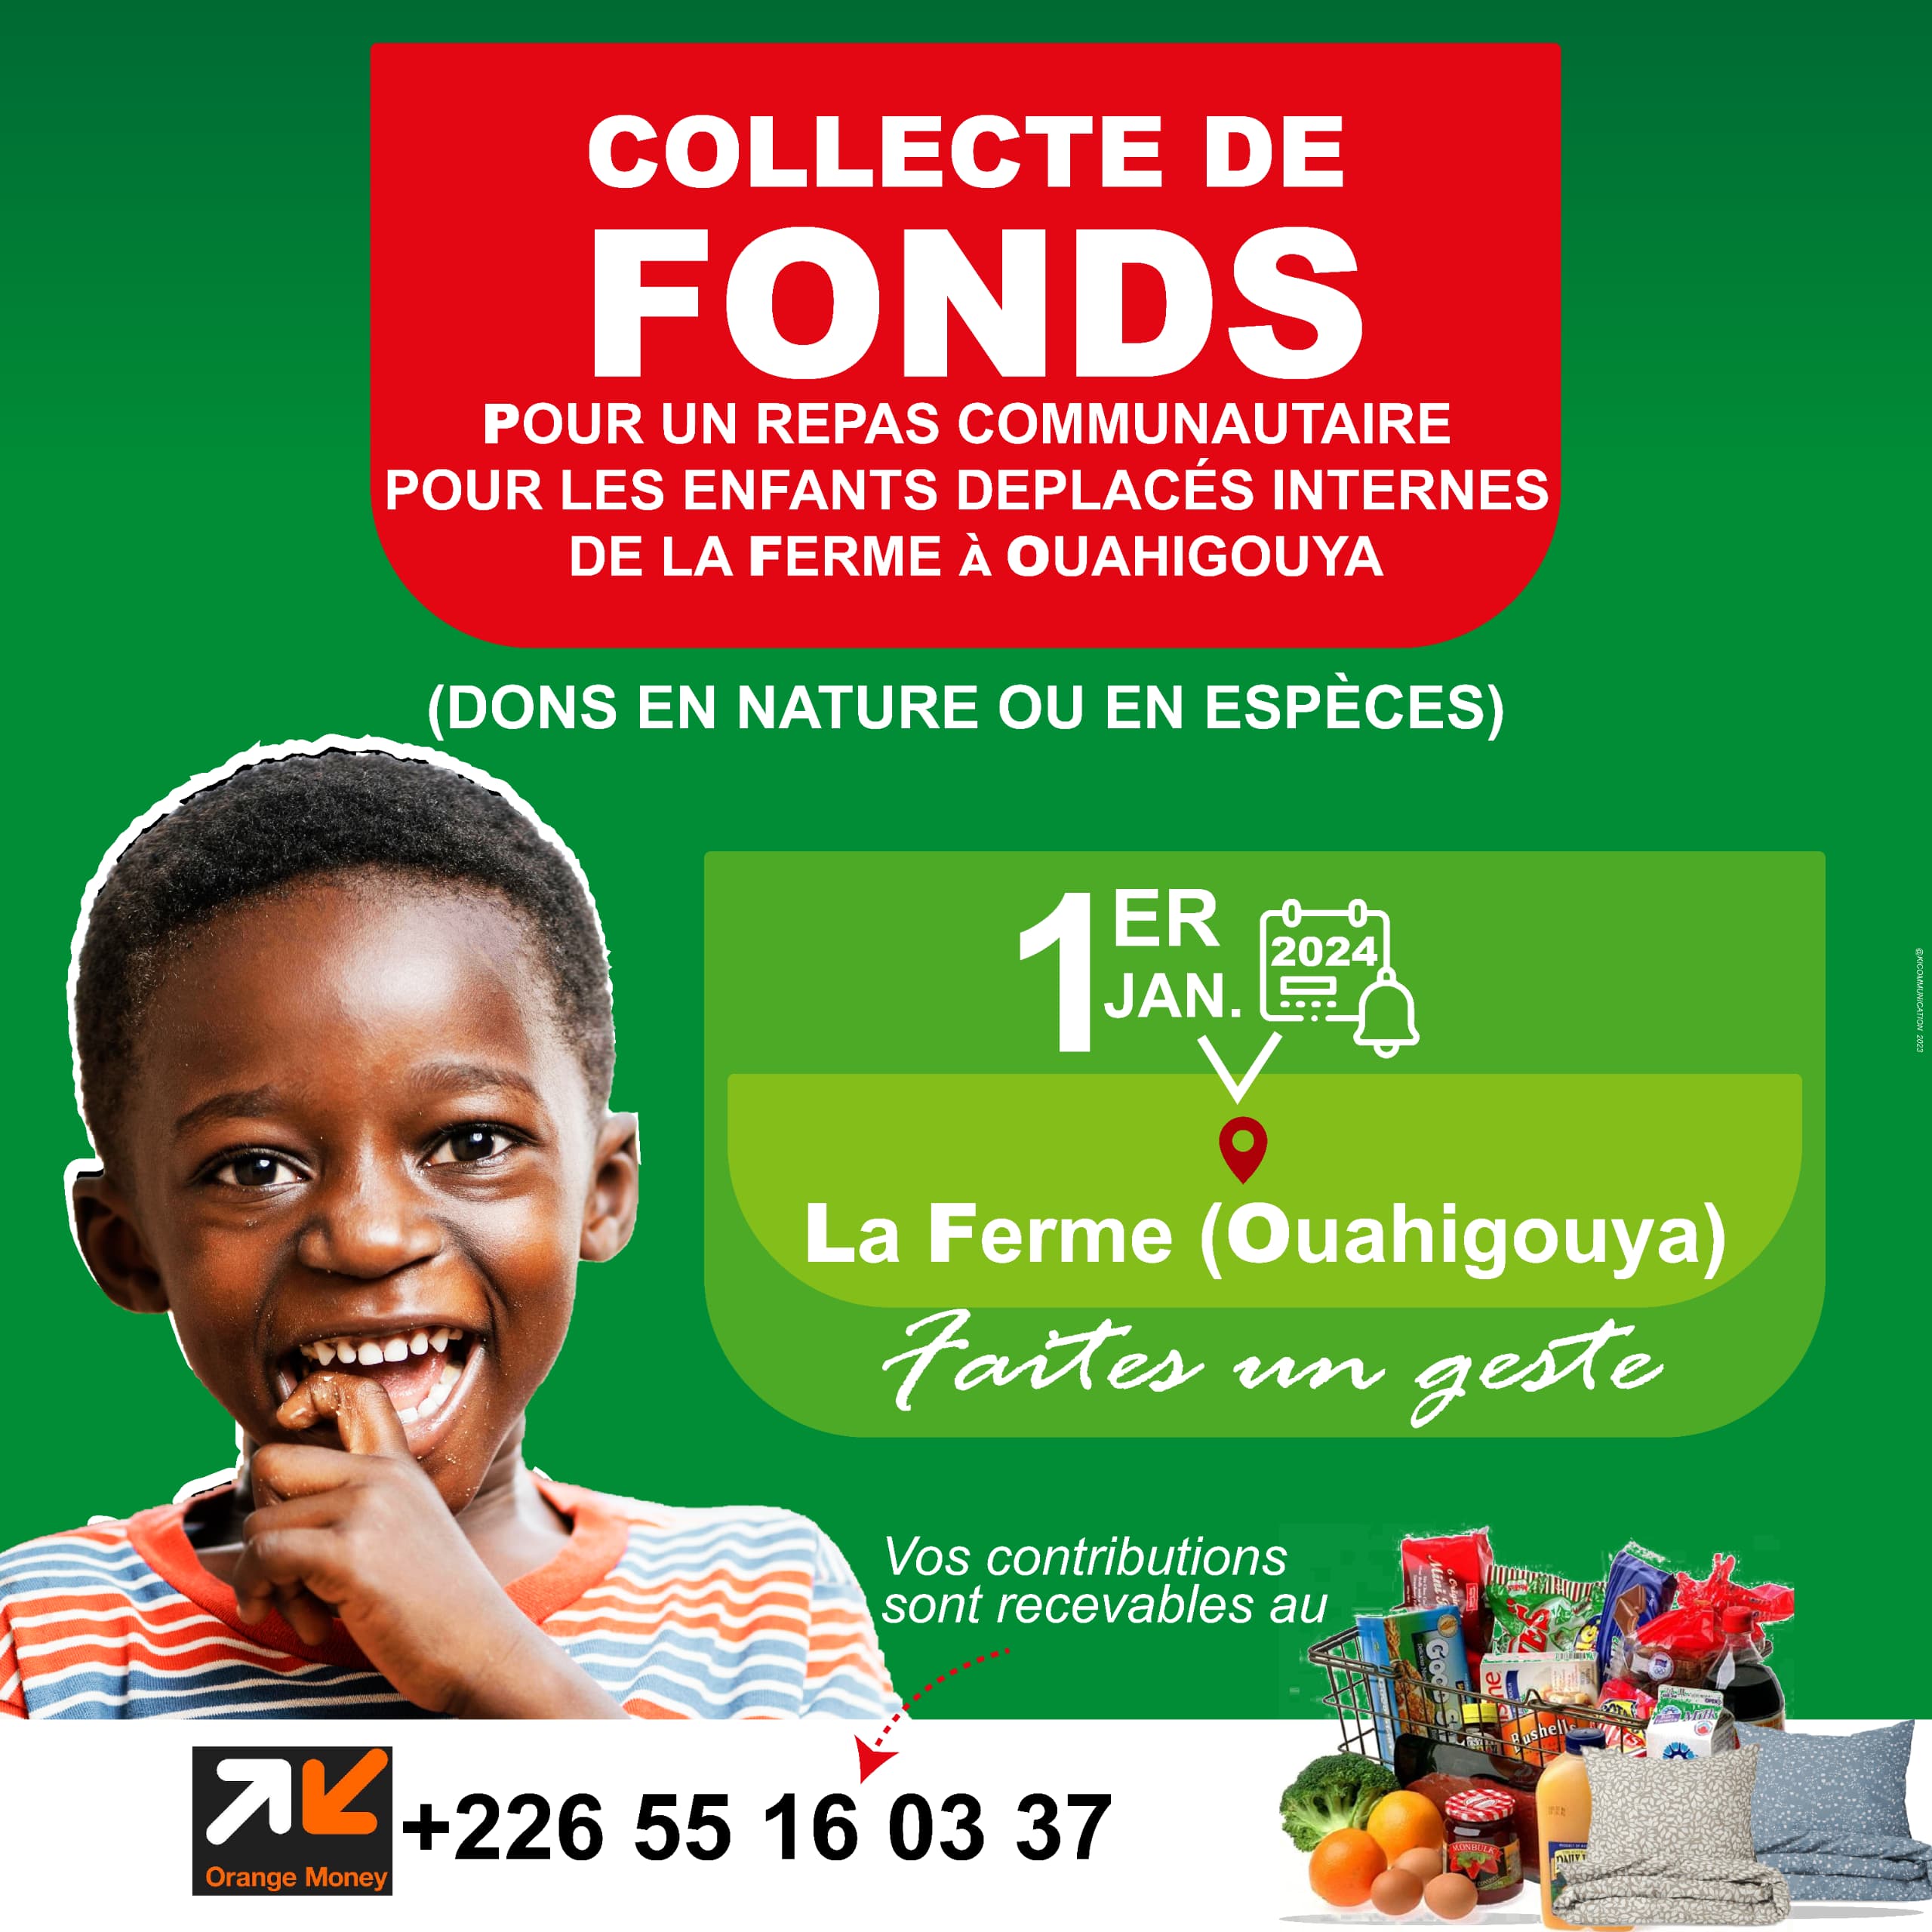 Collecte de fonds pour un repas comunautaire pour les enfants deplacés internes de la ferme à Ouahigouya 